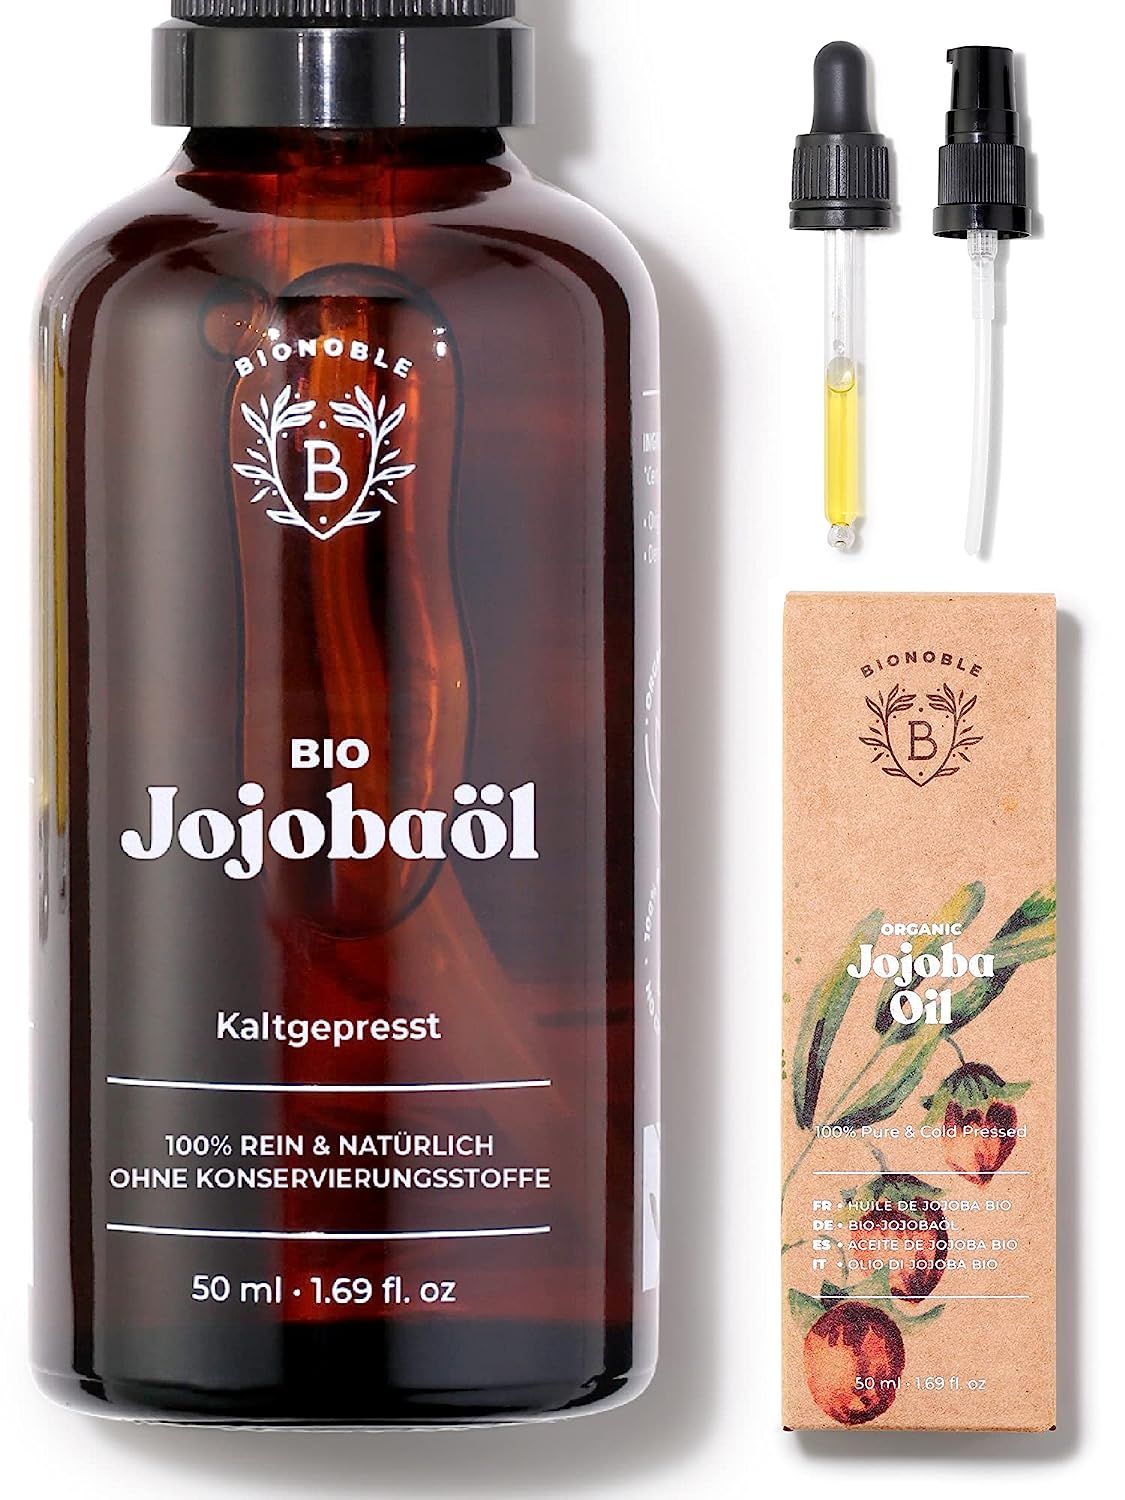 Bionoble Jojobaöl Bio 50ml - 100% Rein, Natürlich und Kaltgepresst